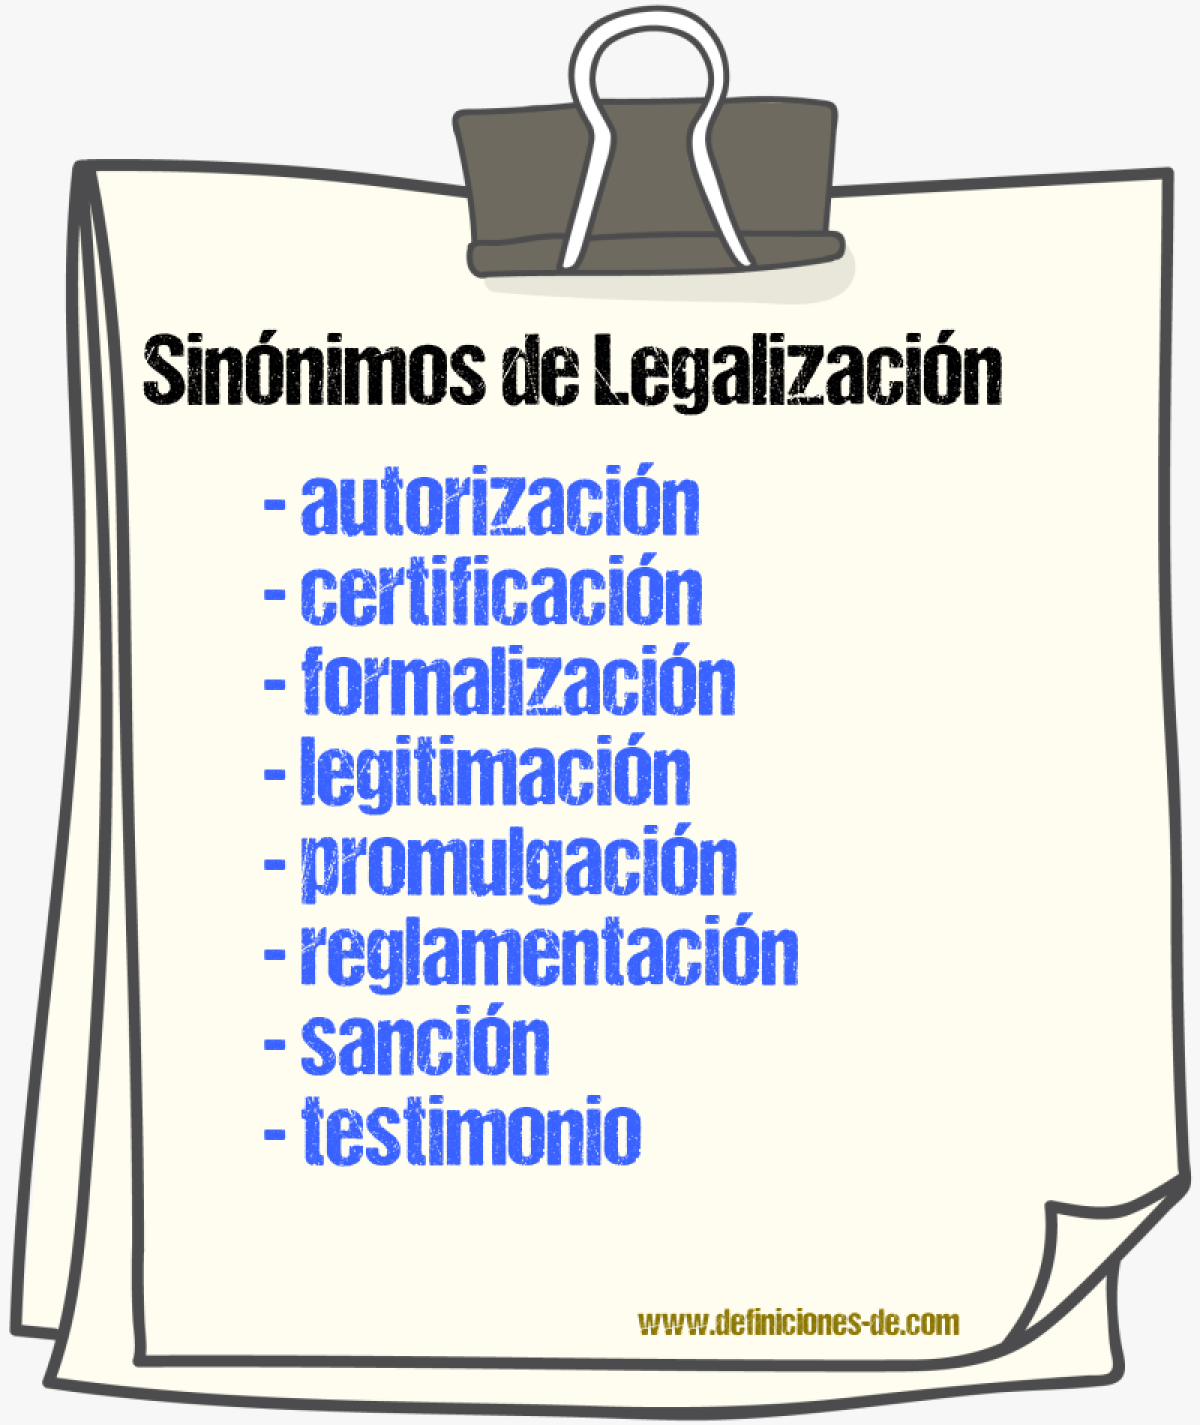 Sinónimos de legalización